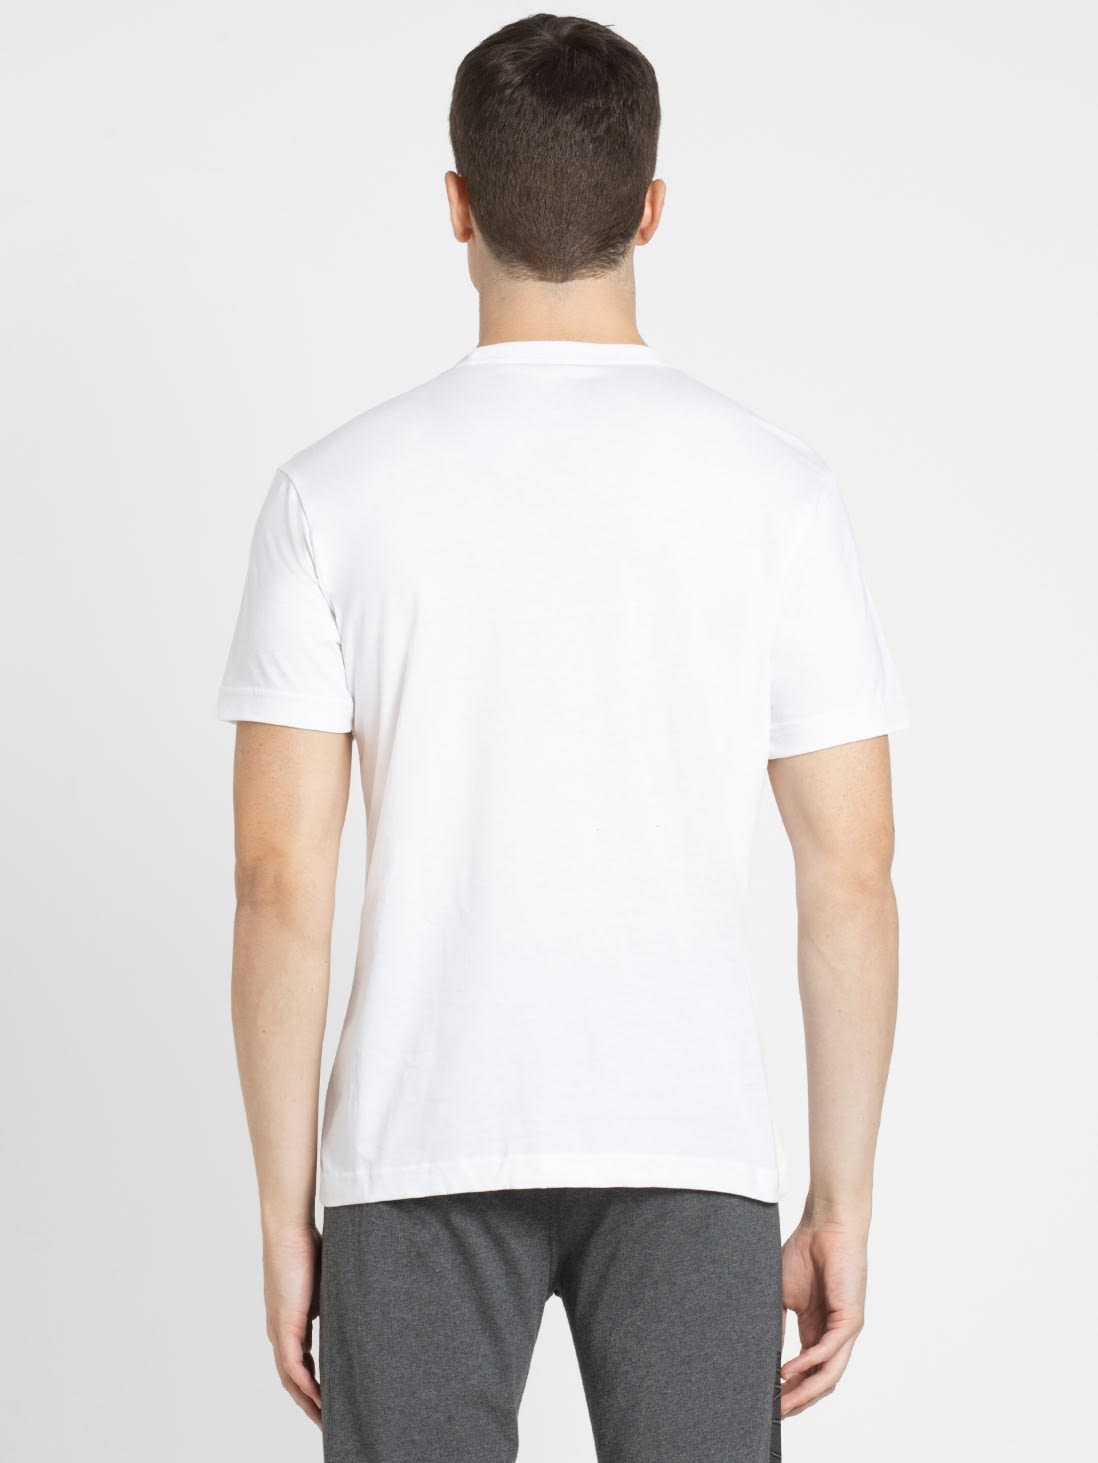 White Regular Fit Round Neck Half Sleeve T-Shirt for Men 2714 | Jockey ...